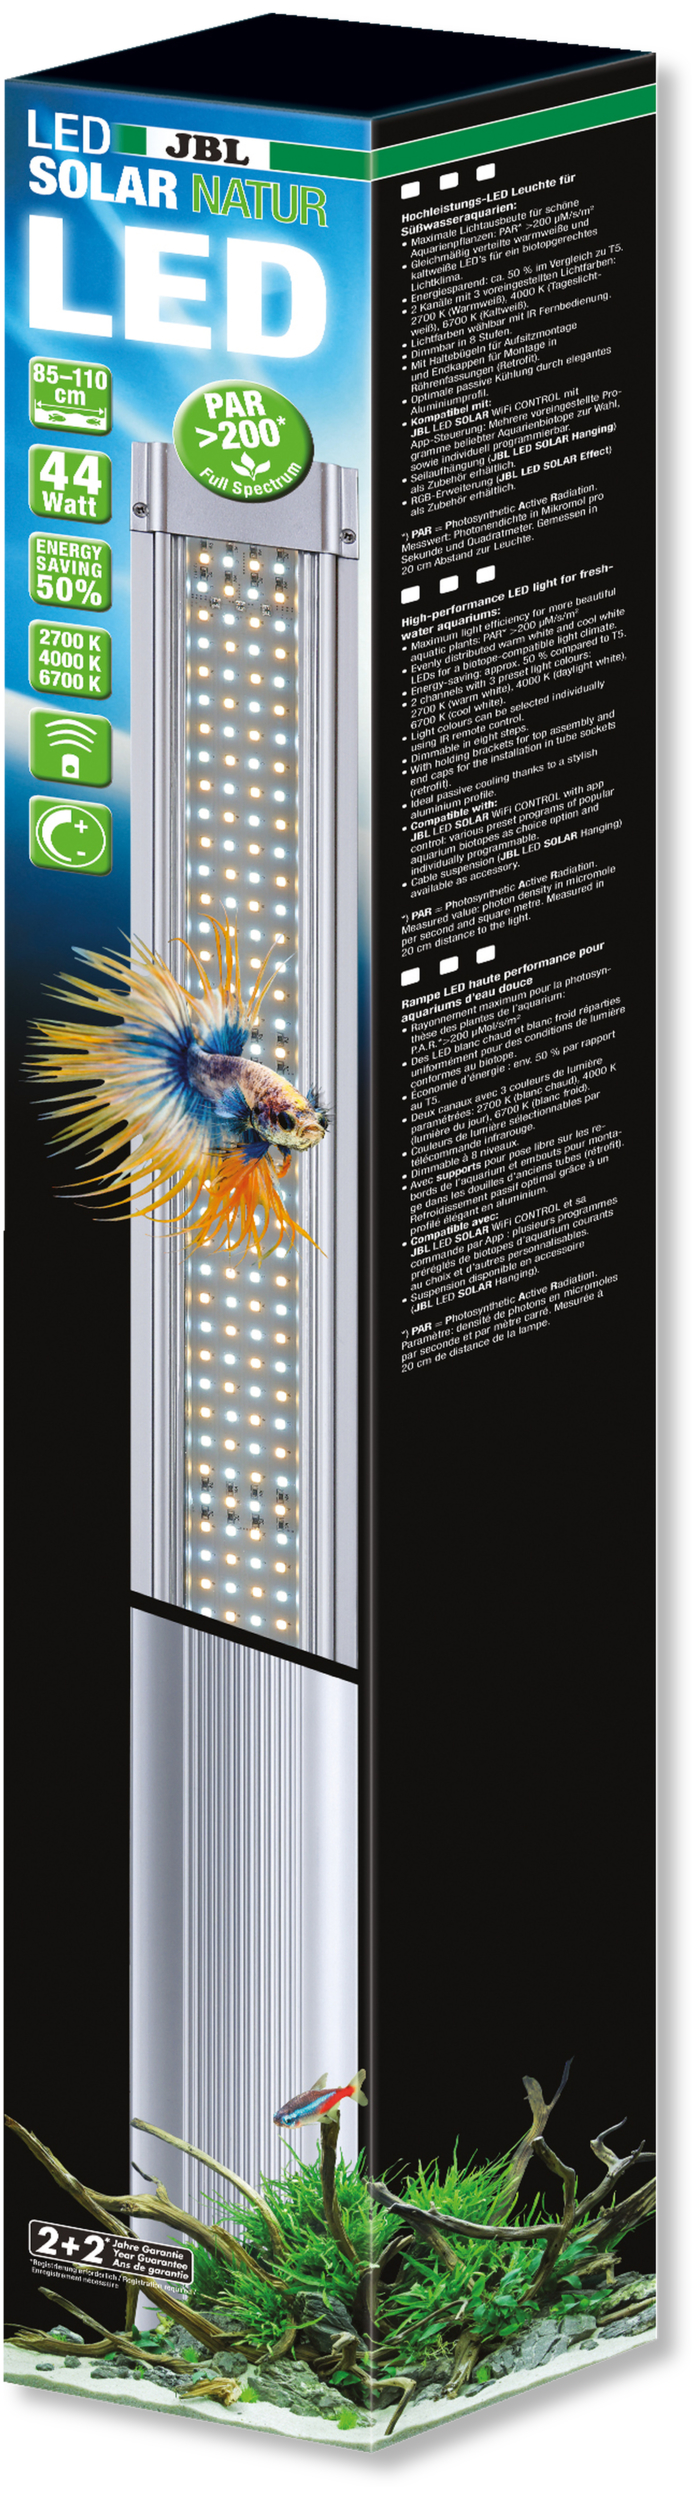 JBL LED Solar Natur 44W rampe aquarium Eau douce de 85 à 110 cm ou remplace tube T5 et T8